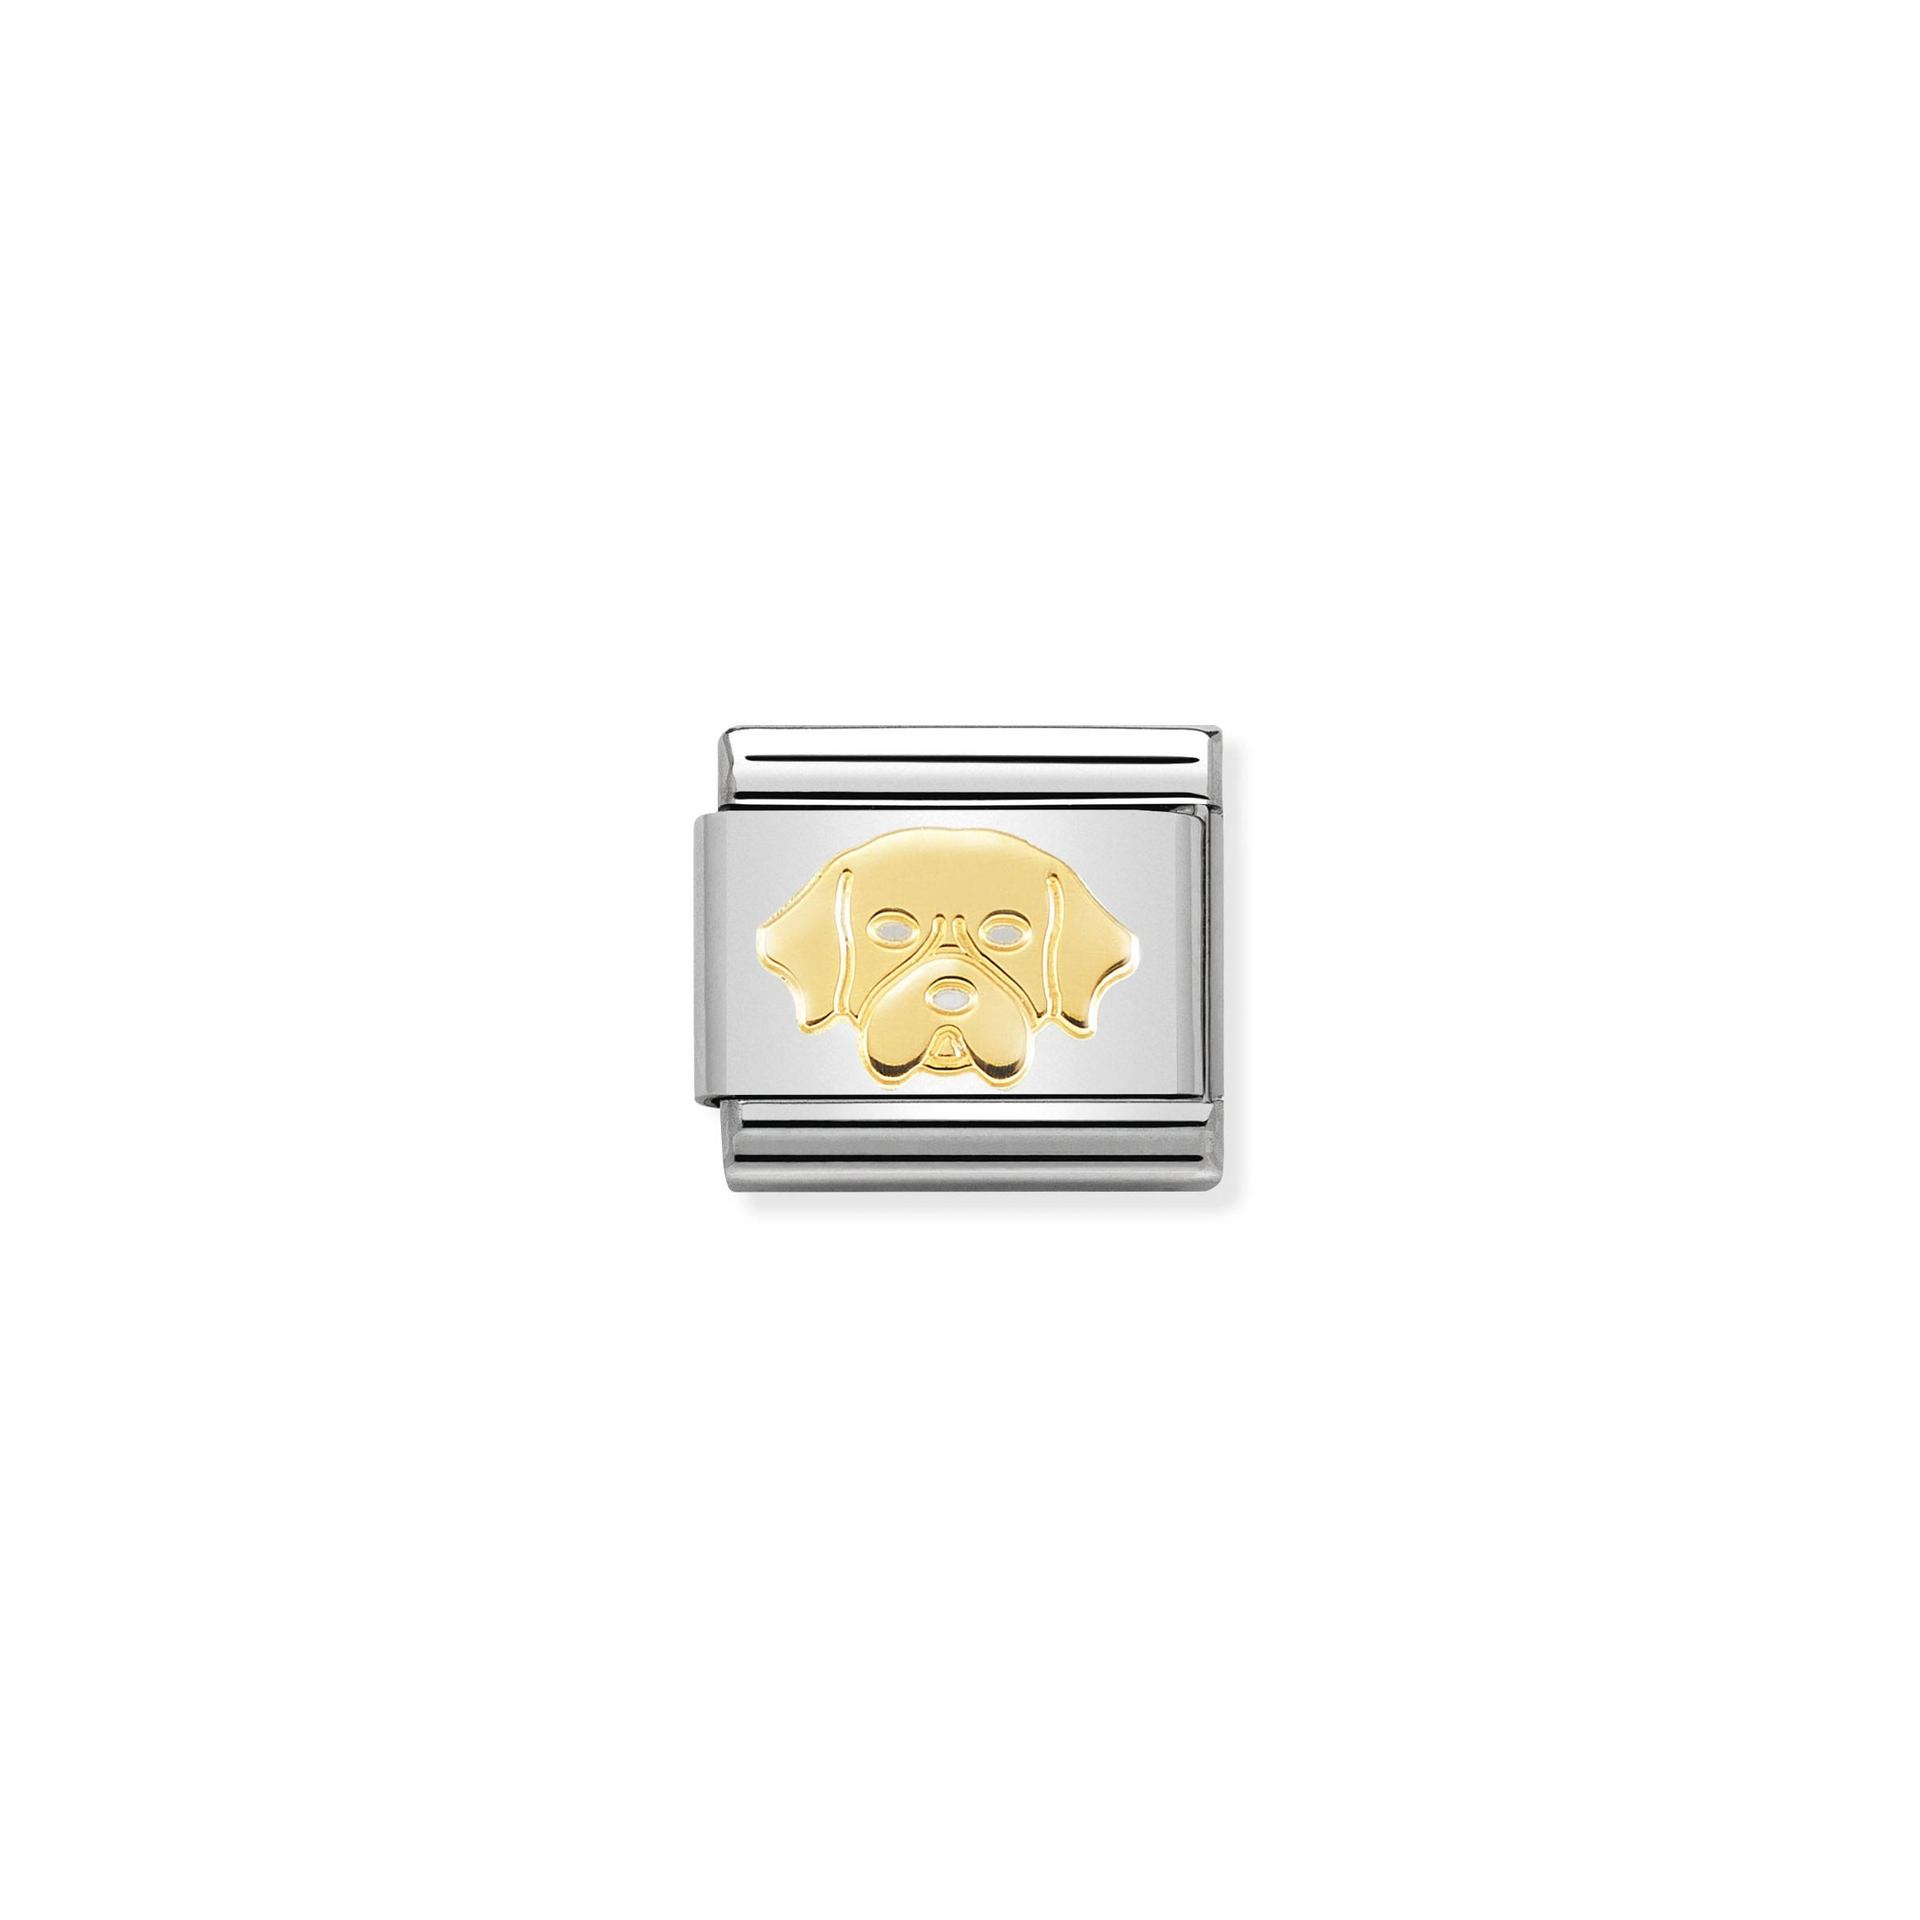 Nomination composable Classic link Golden Retriever charm - 030162_56